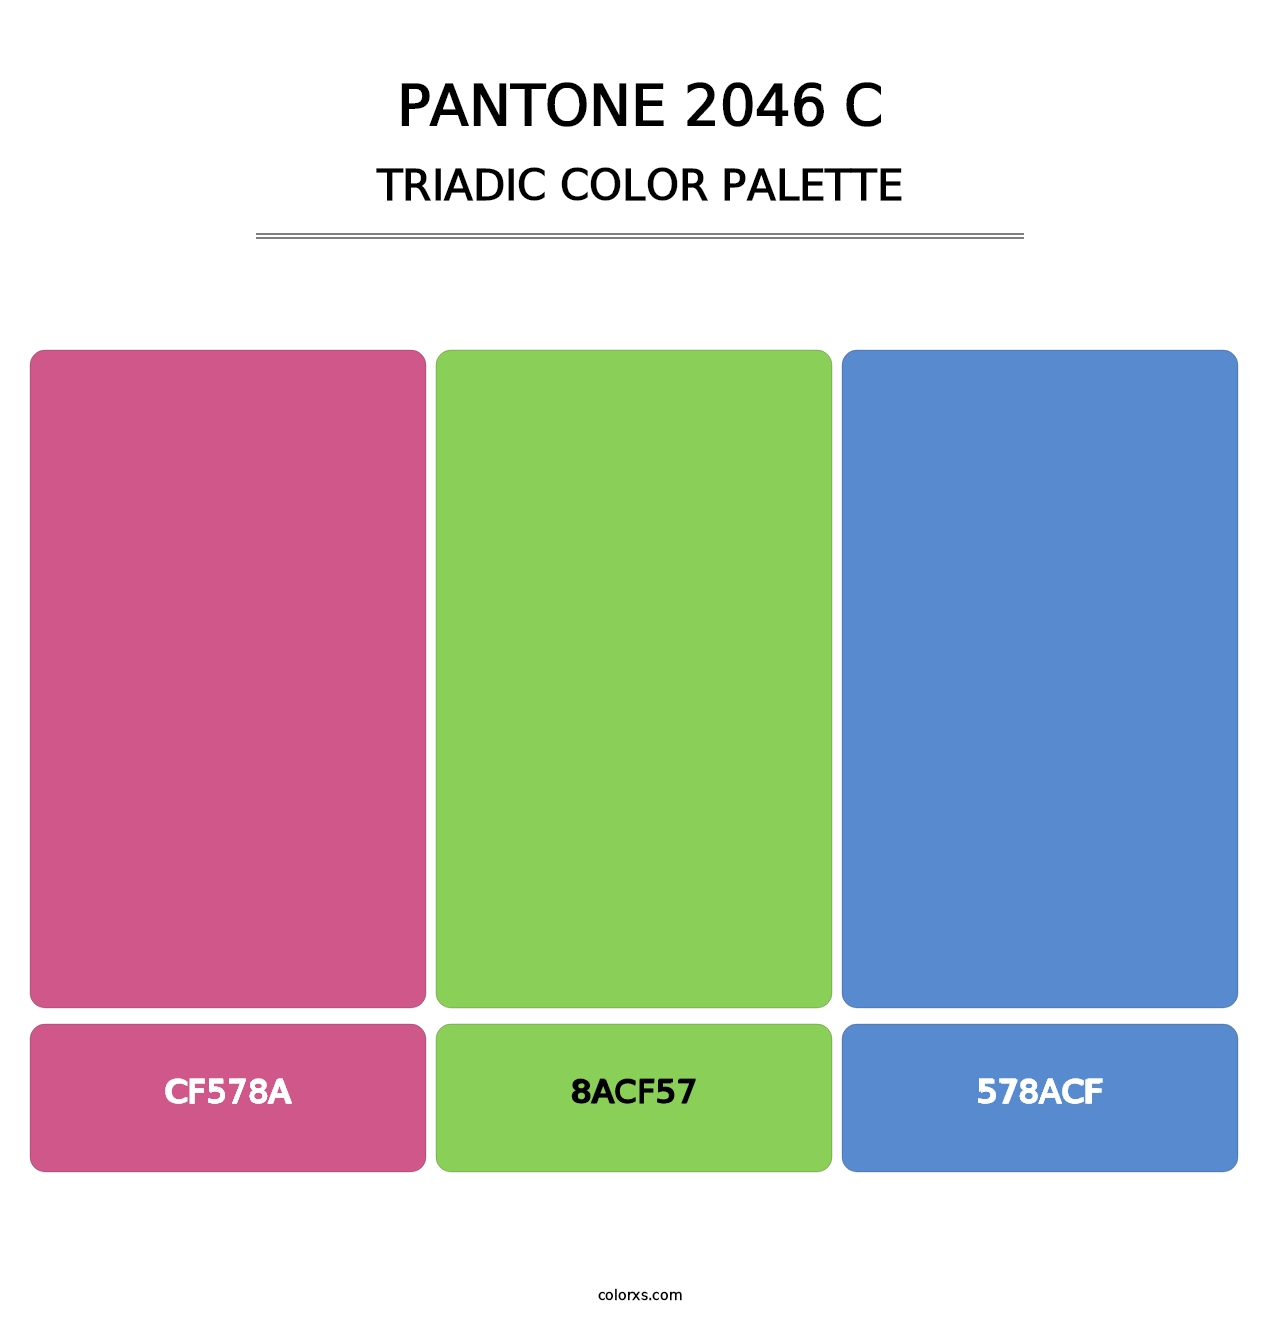 PANTONE 2046 C - Triadic Color Palette